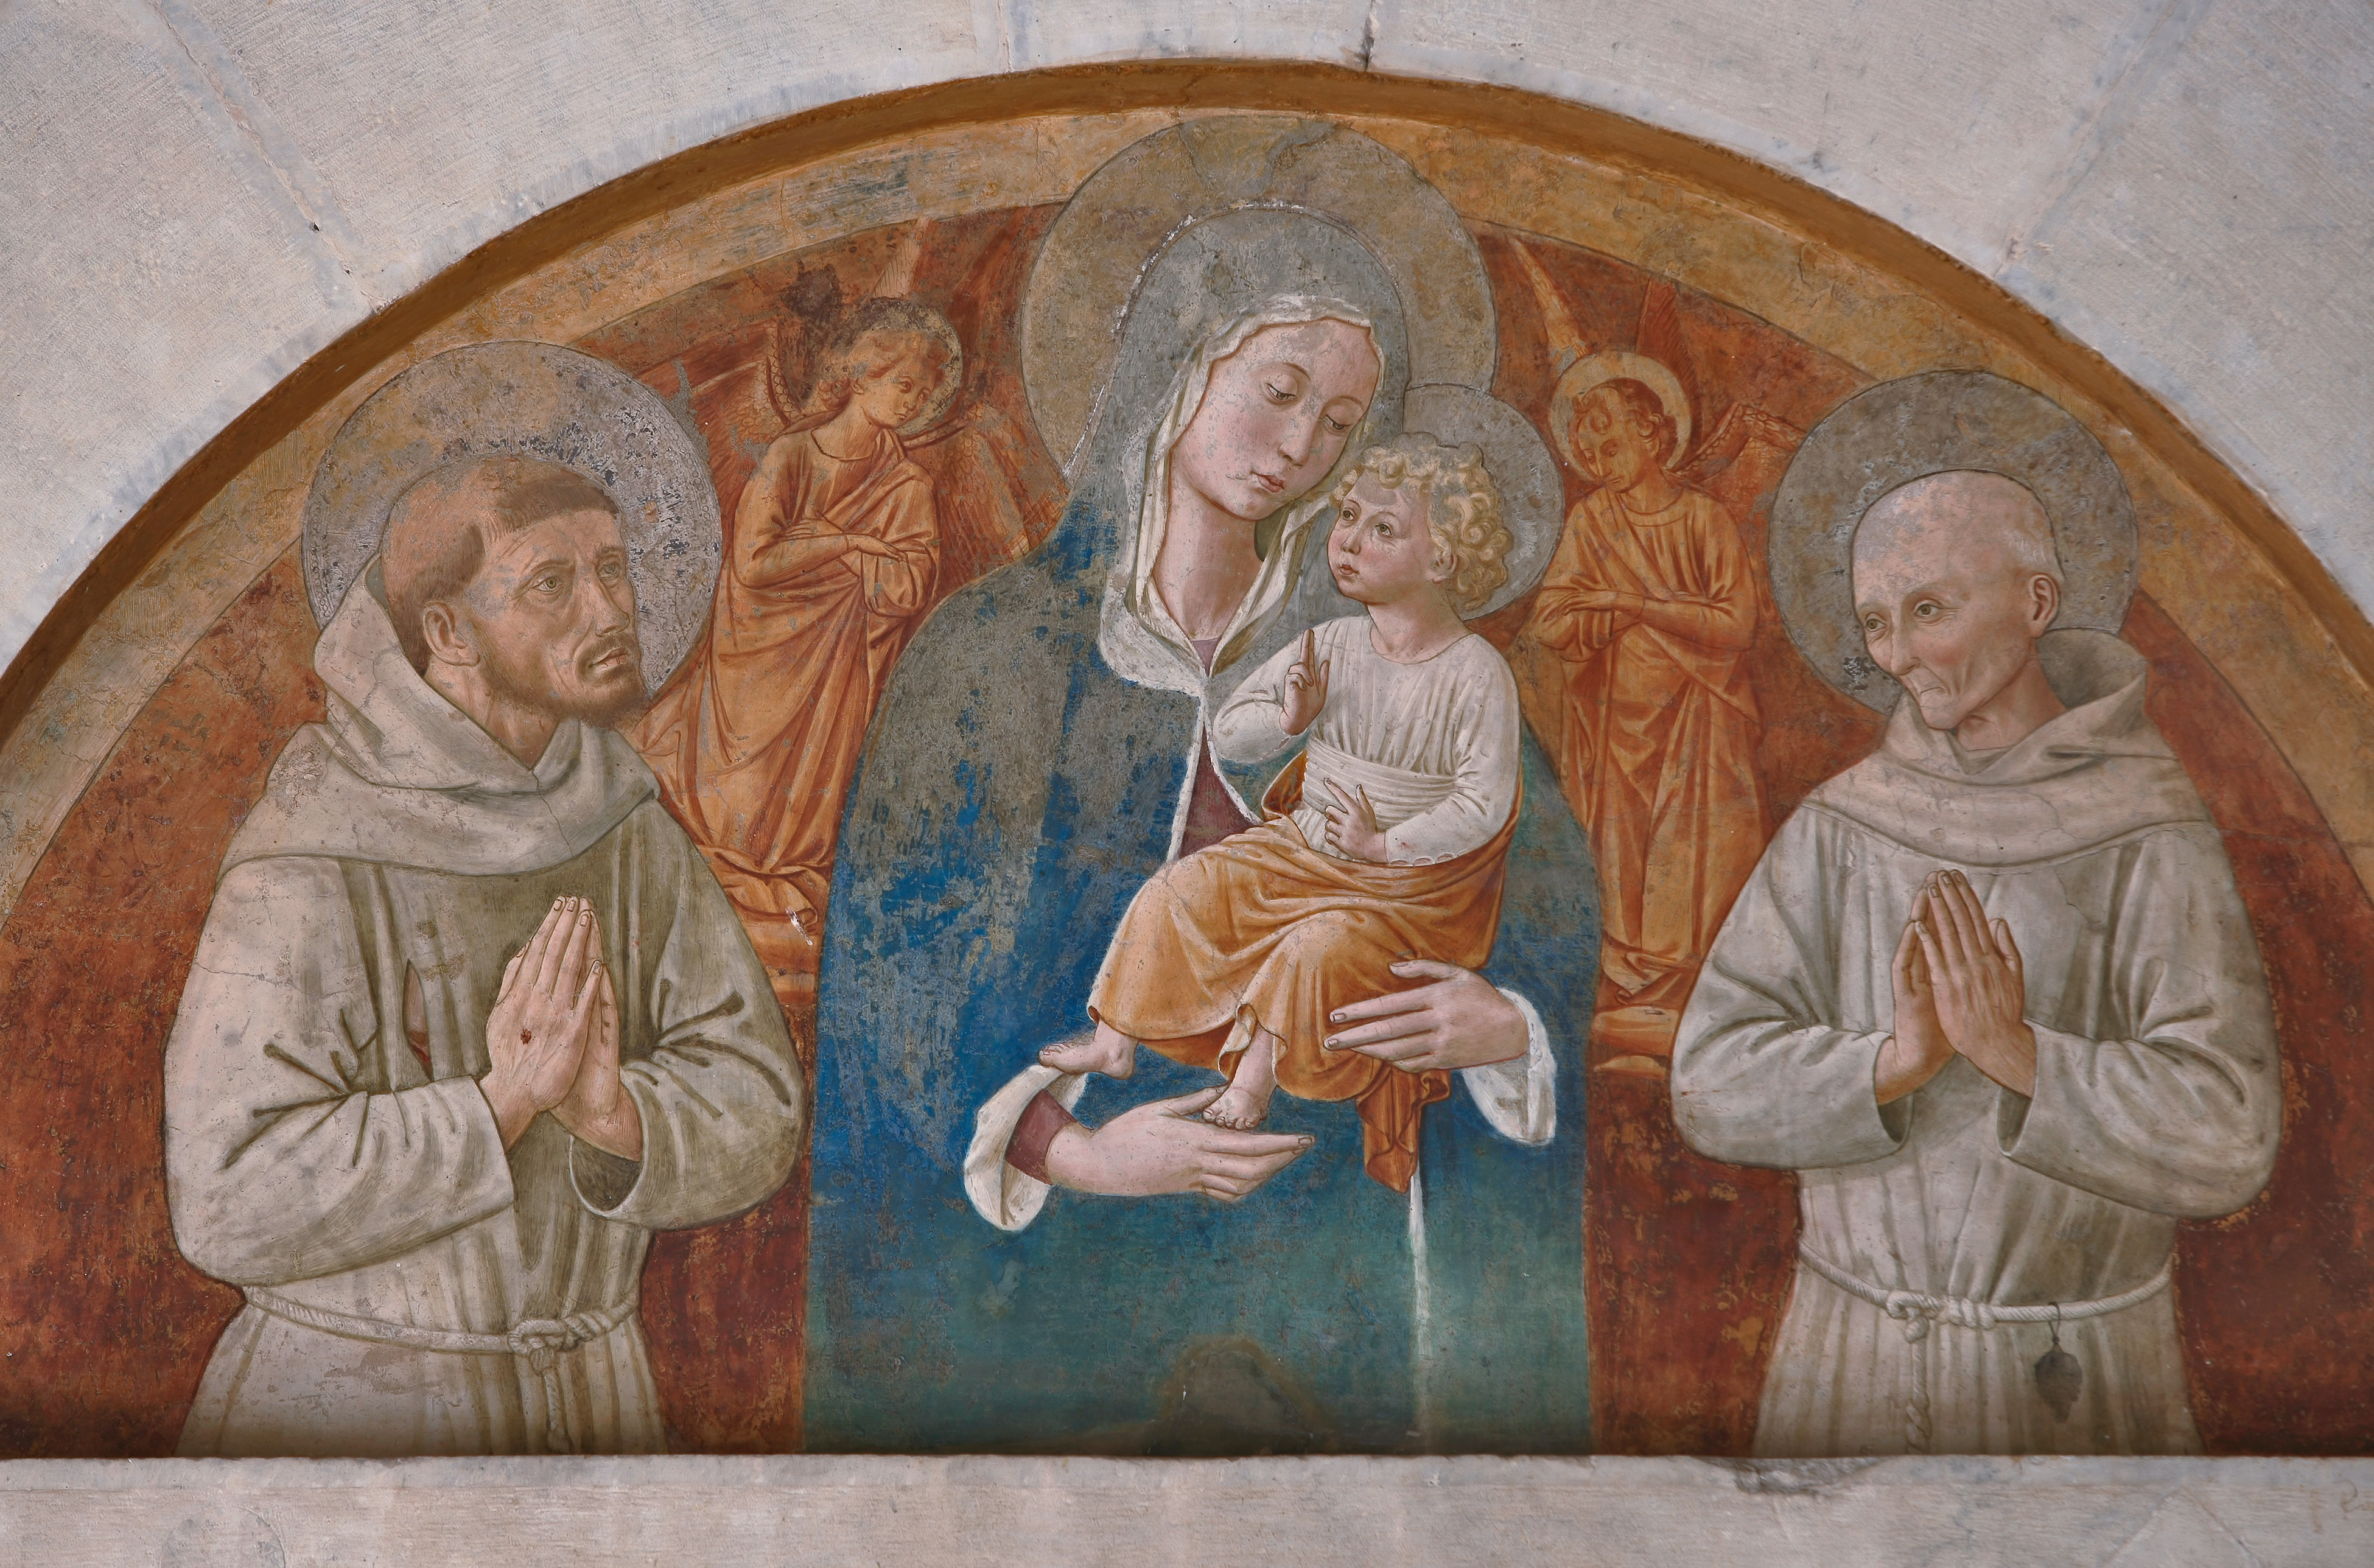 Montefalco, Chiesa di San Fortunato, lunetta sopra il portale: "Madonna con Bambino e i Ss. Francesco e Bernardino", affresco di Benozzo Gozzoli.